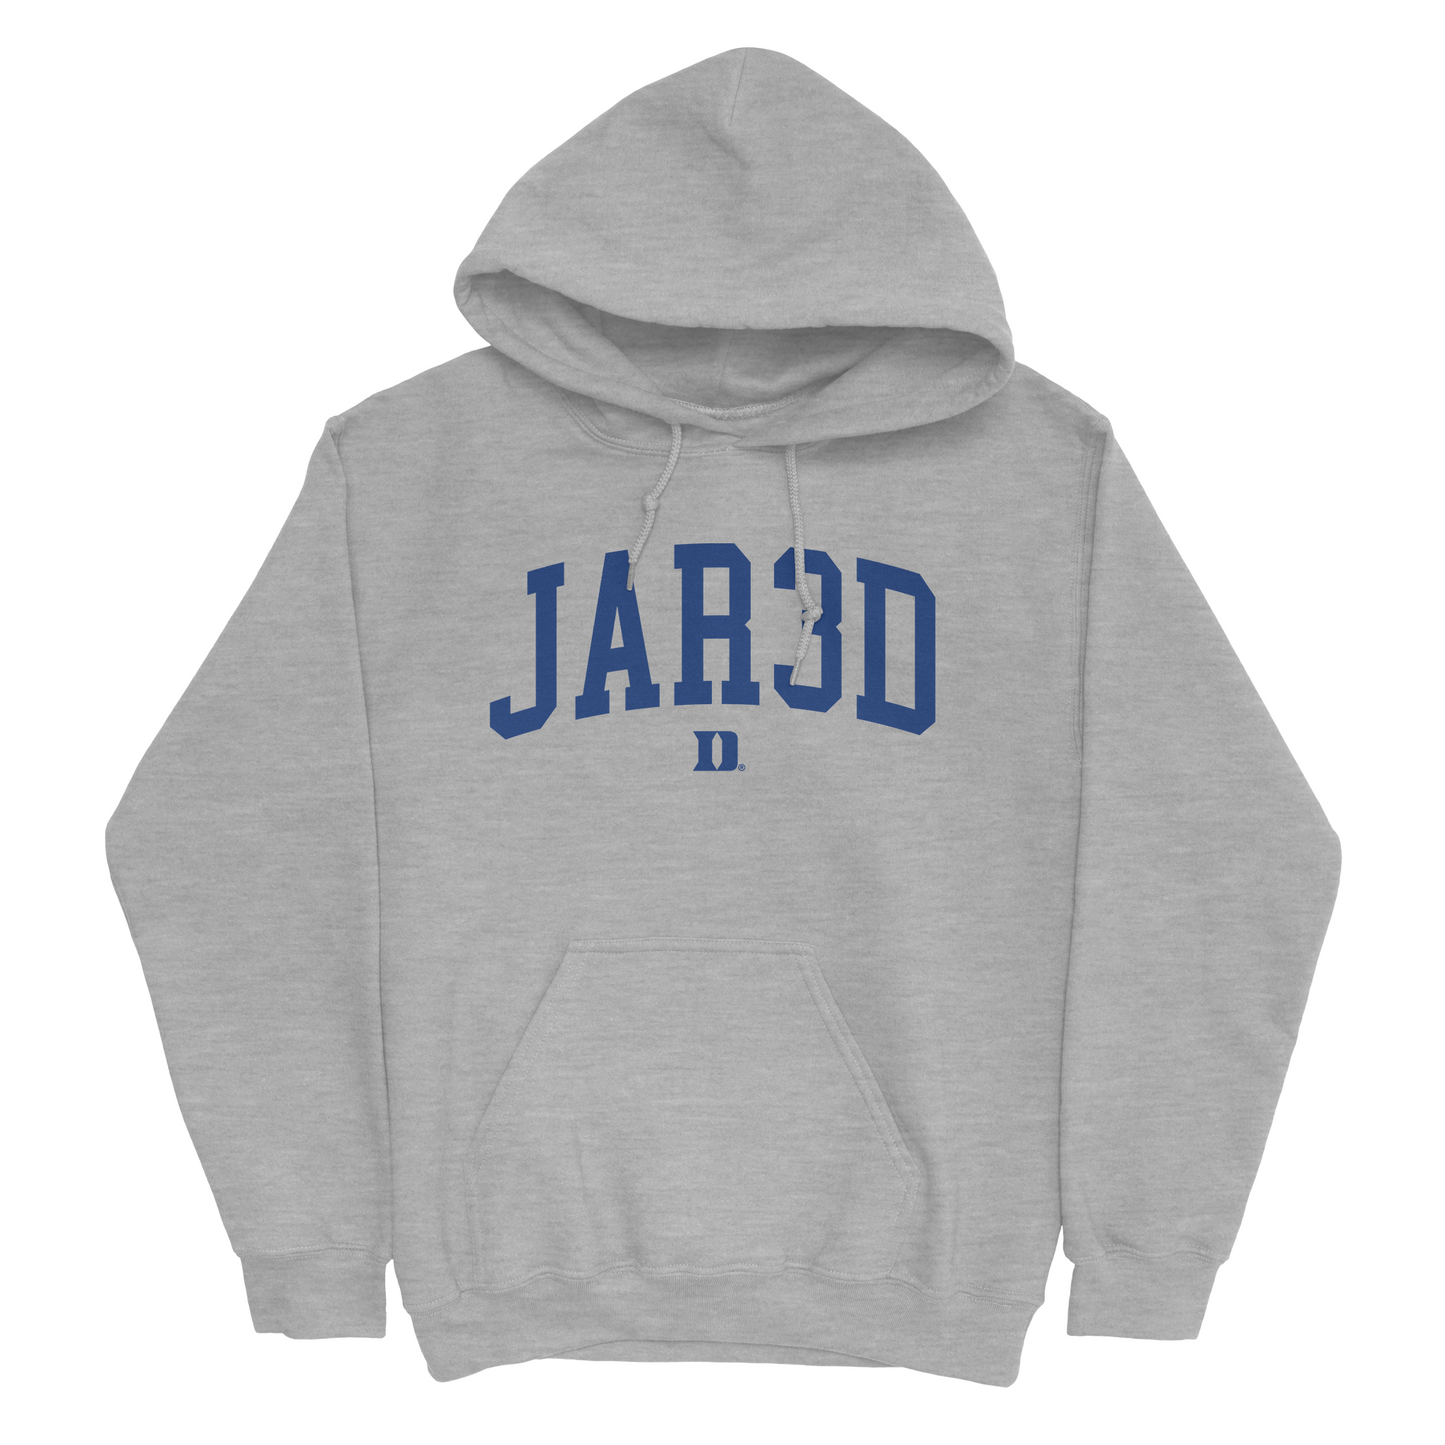 EXCLUSIVE RELEASE: JAR3D Grey Hoodie